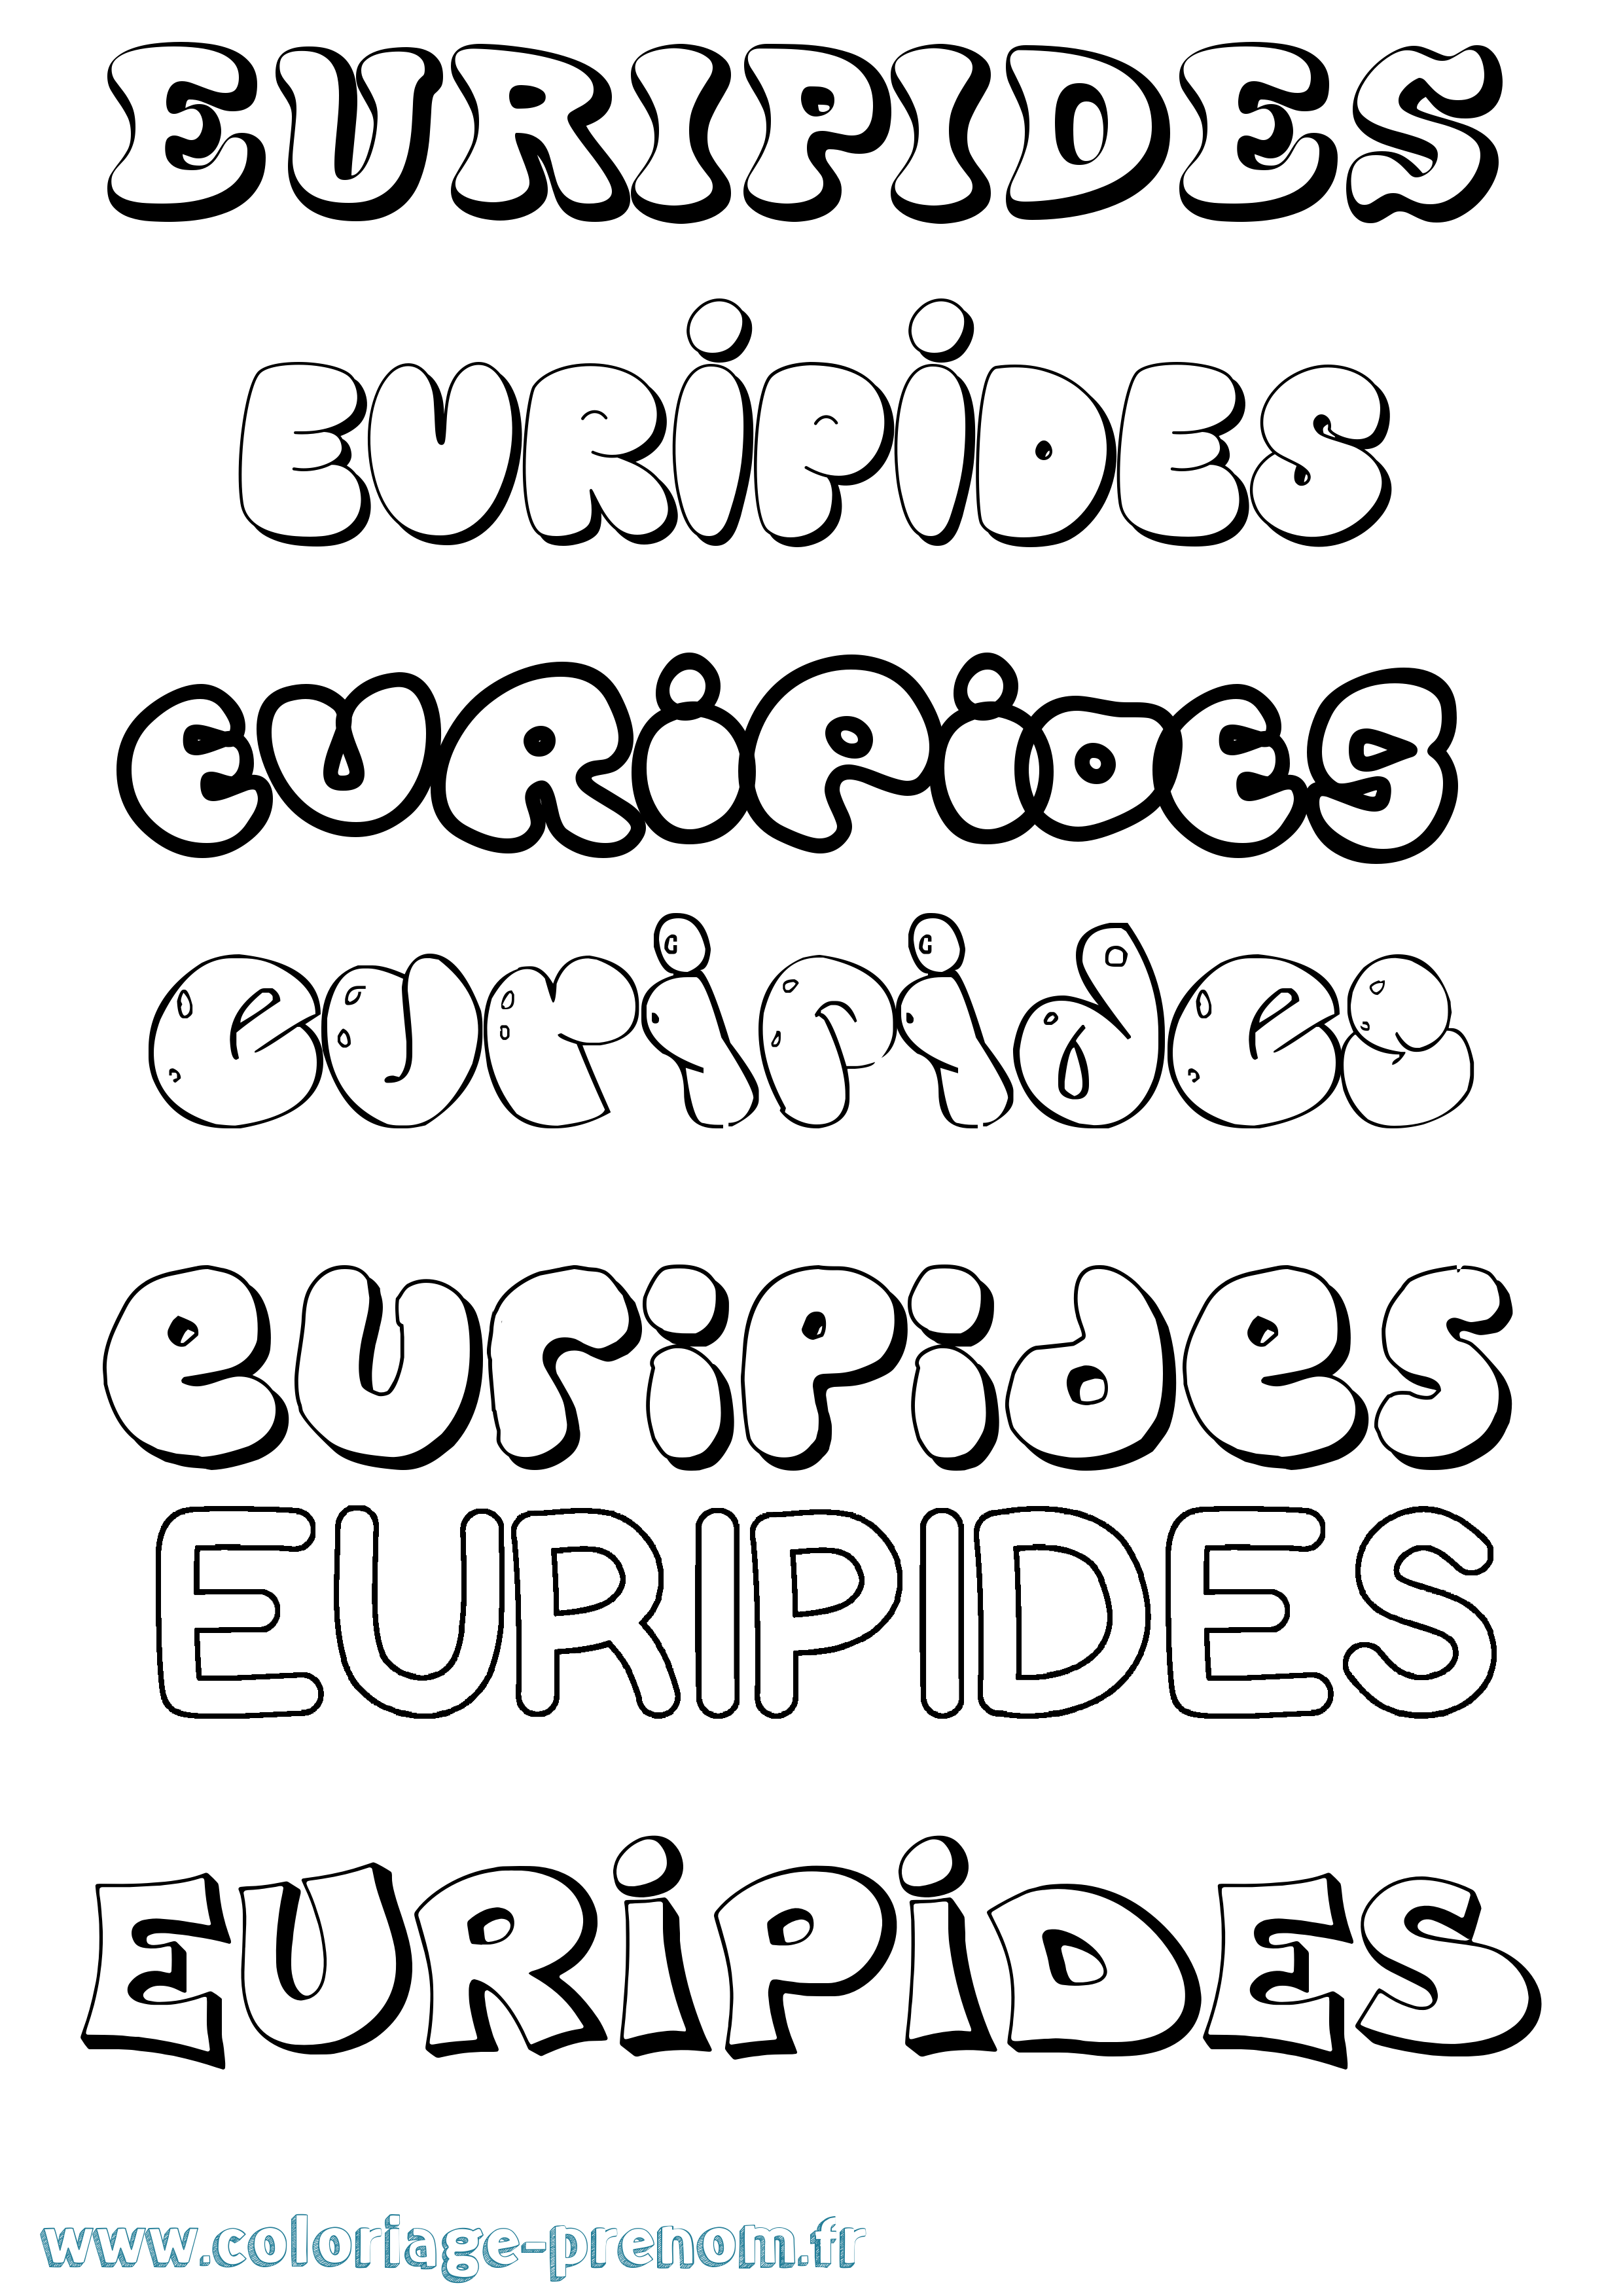 Coloriage prénom Euripides Bubble